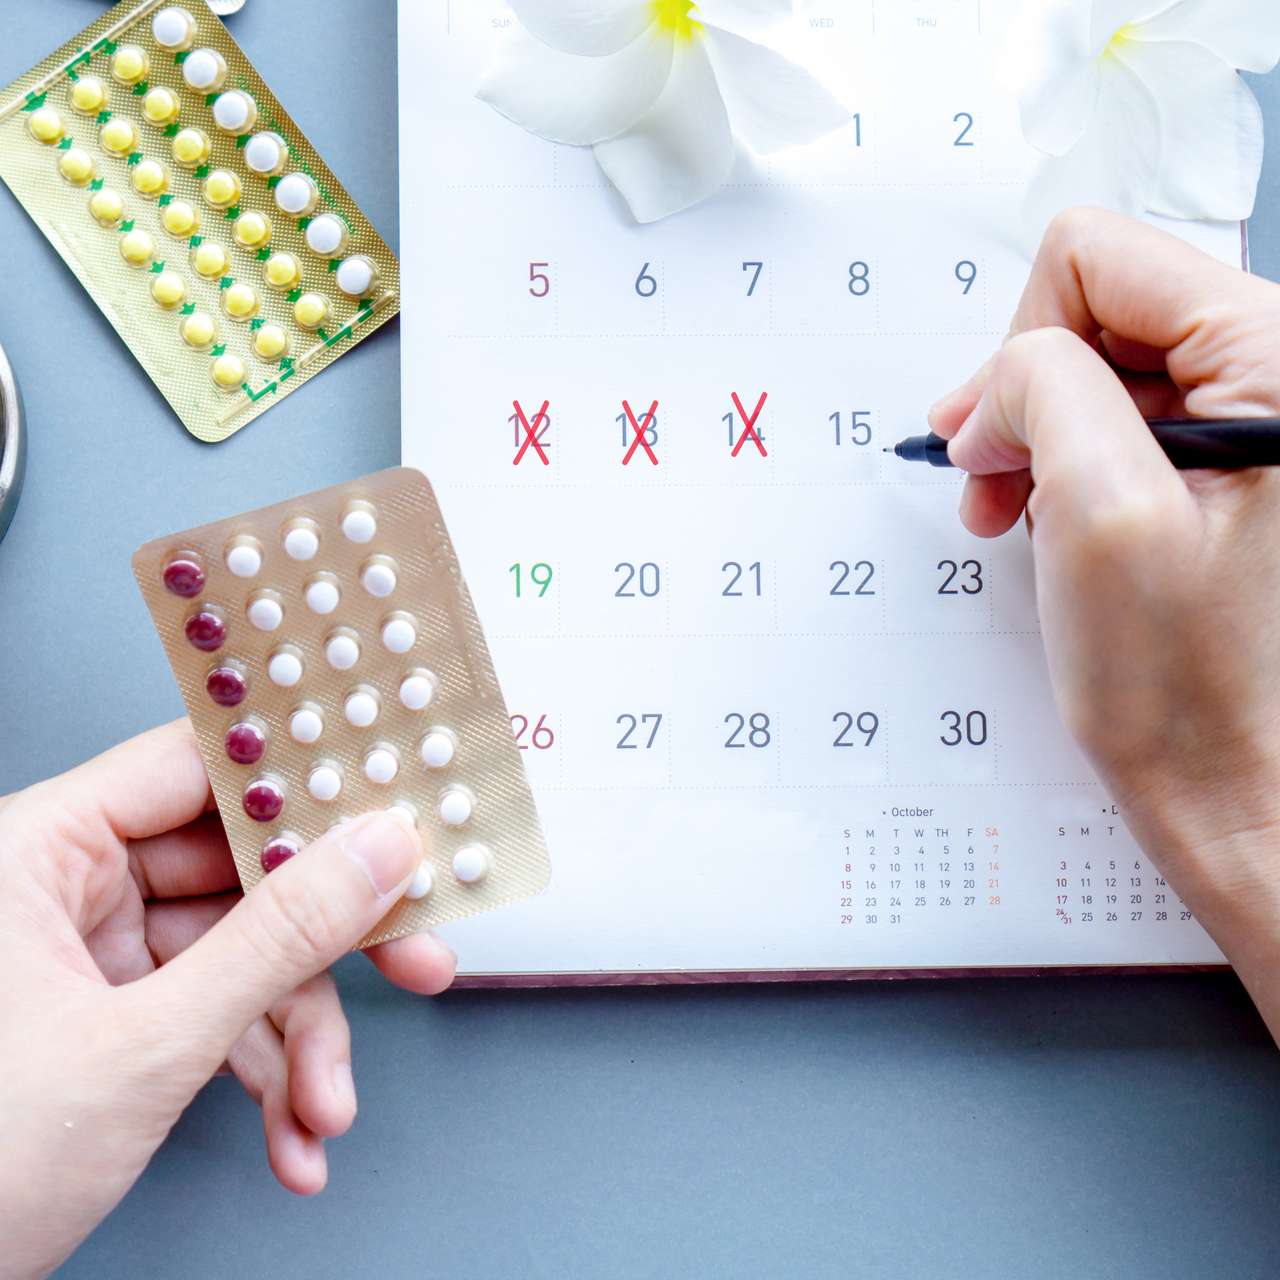 Pilule contraceptive : que faire en cas d'oubli ?